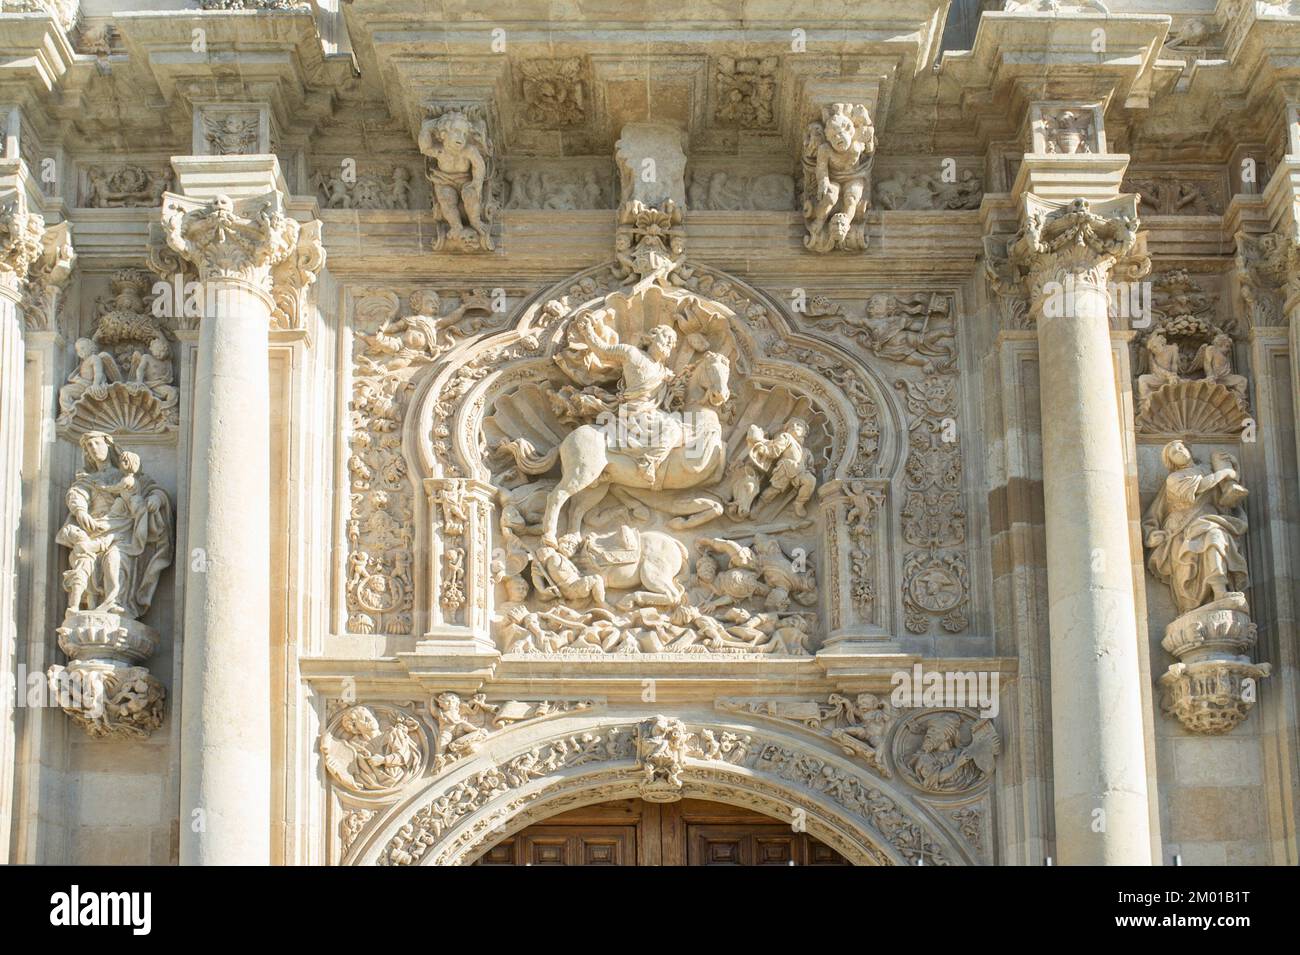 San Giacomo la scultura di Moor-Sayer. Convento di San Marcos, Leon, Spagna. Edificio del XII secolo che ospita ora un lussuoso hotel Parador. Foto Stock